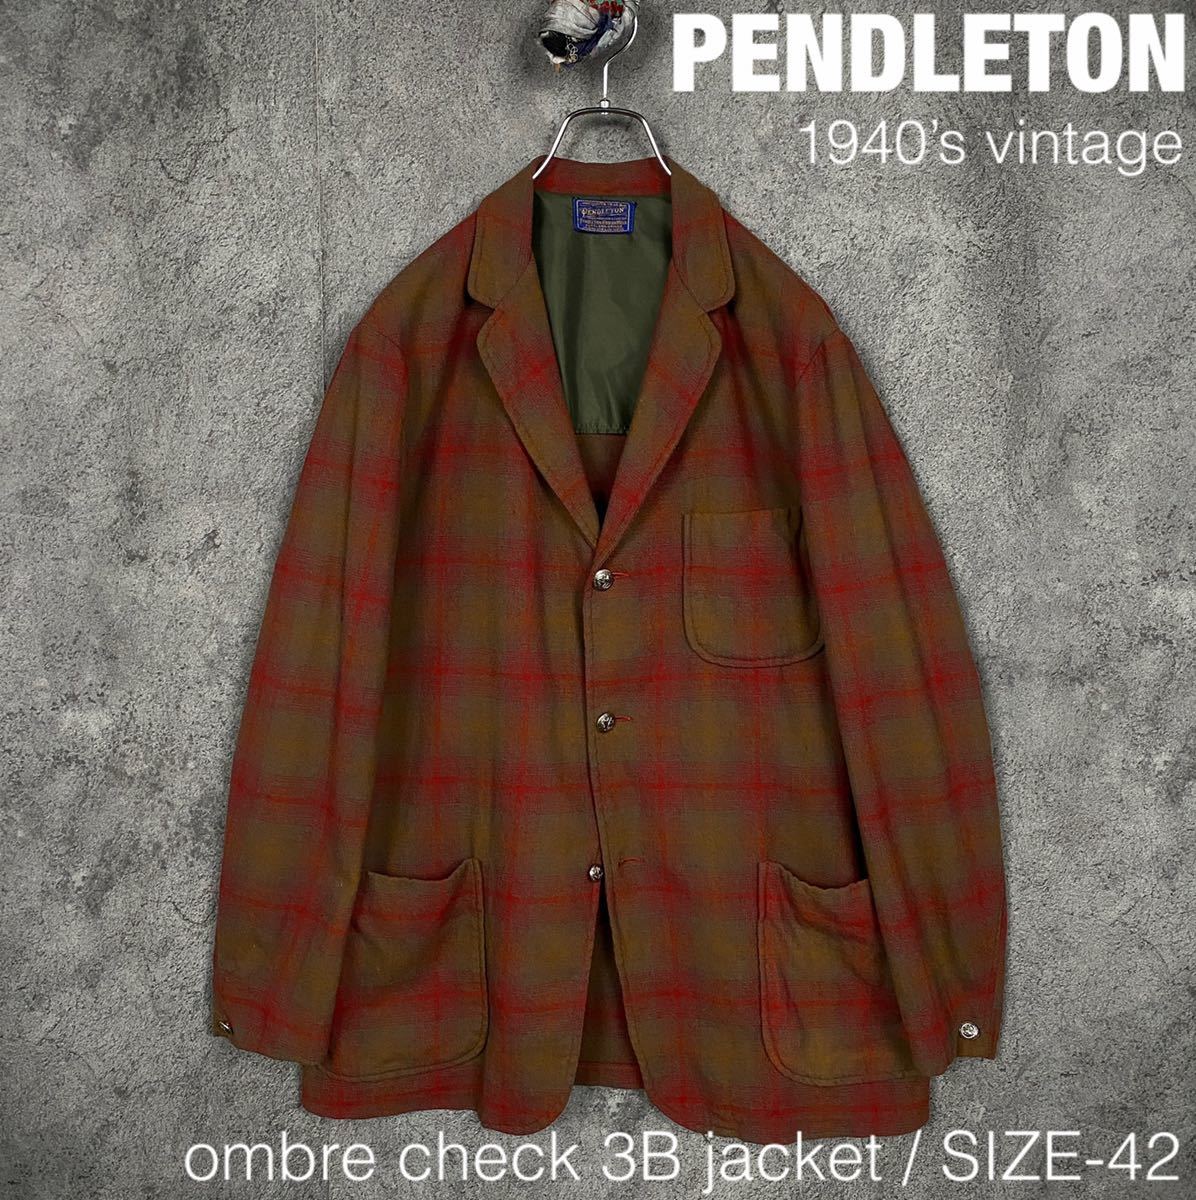 PENDLETON 40s ビンテージ オンブレ シャドー チェック 3B ジャケット グランジ ペンドルトン 50s 60s vintage JACKET テーラード